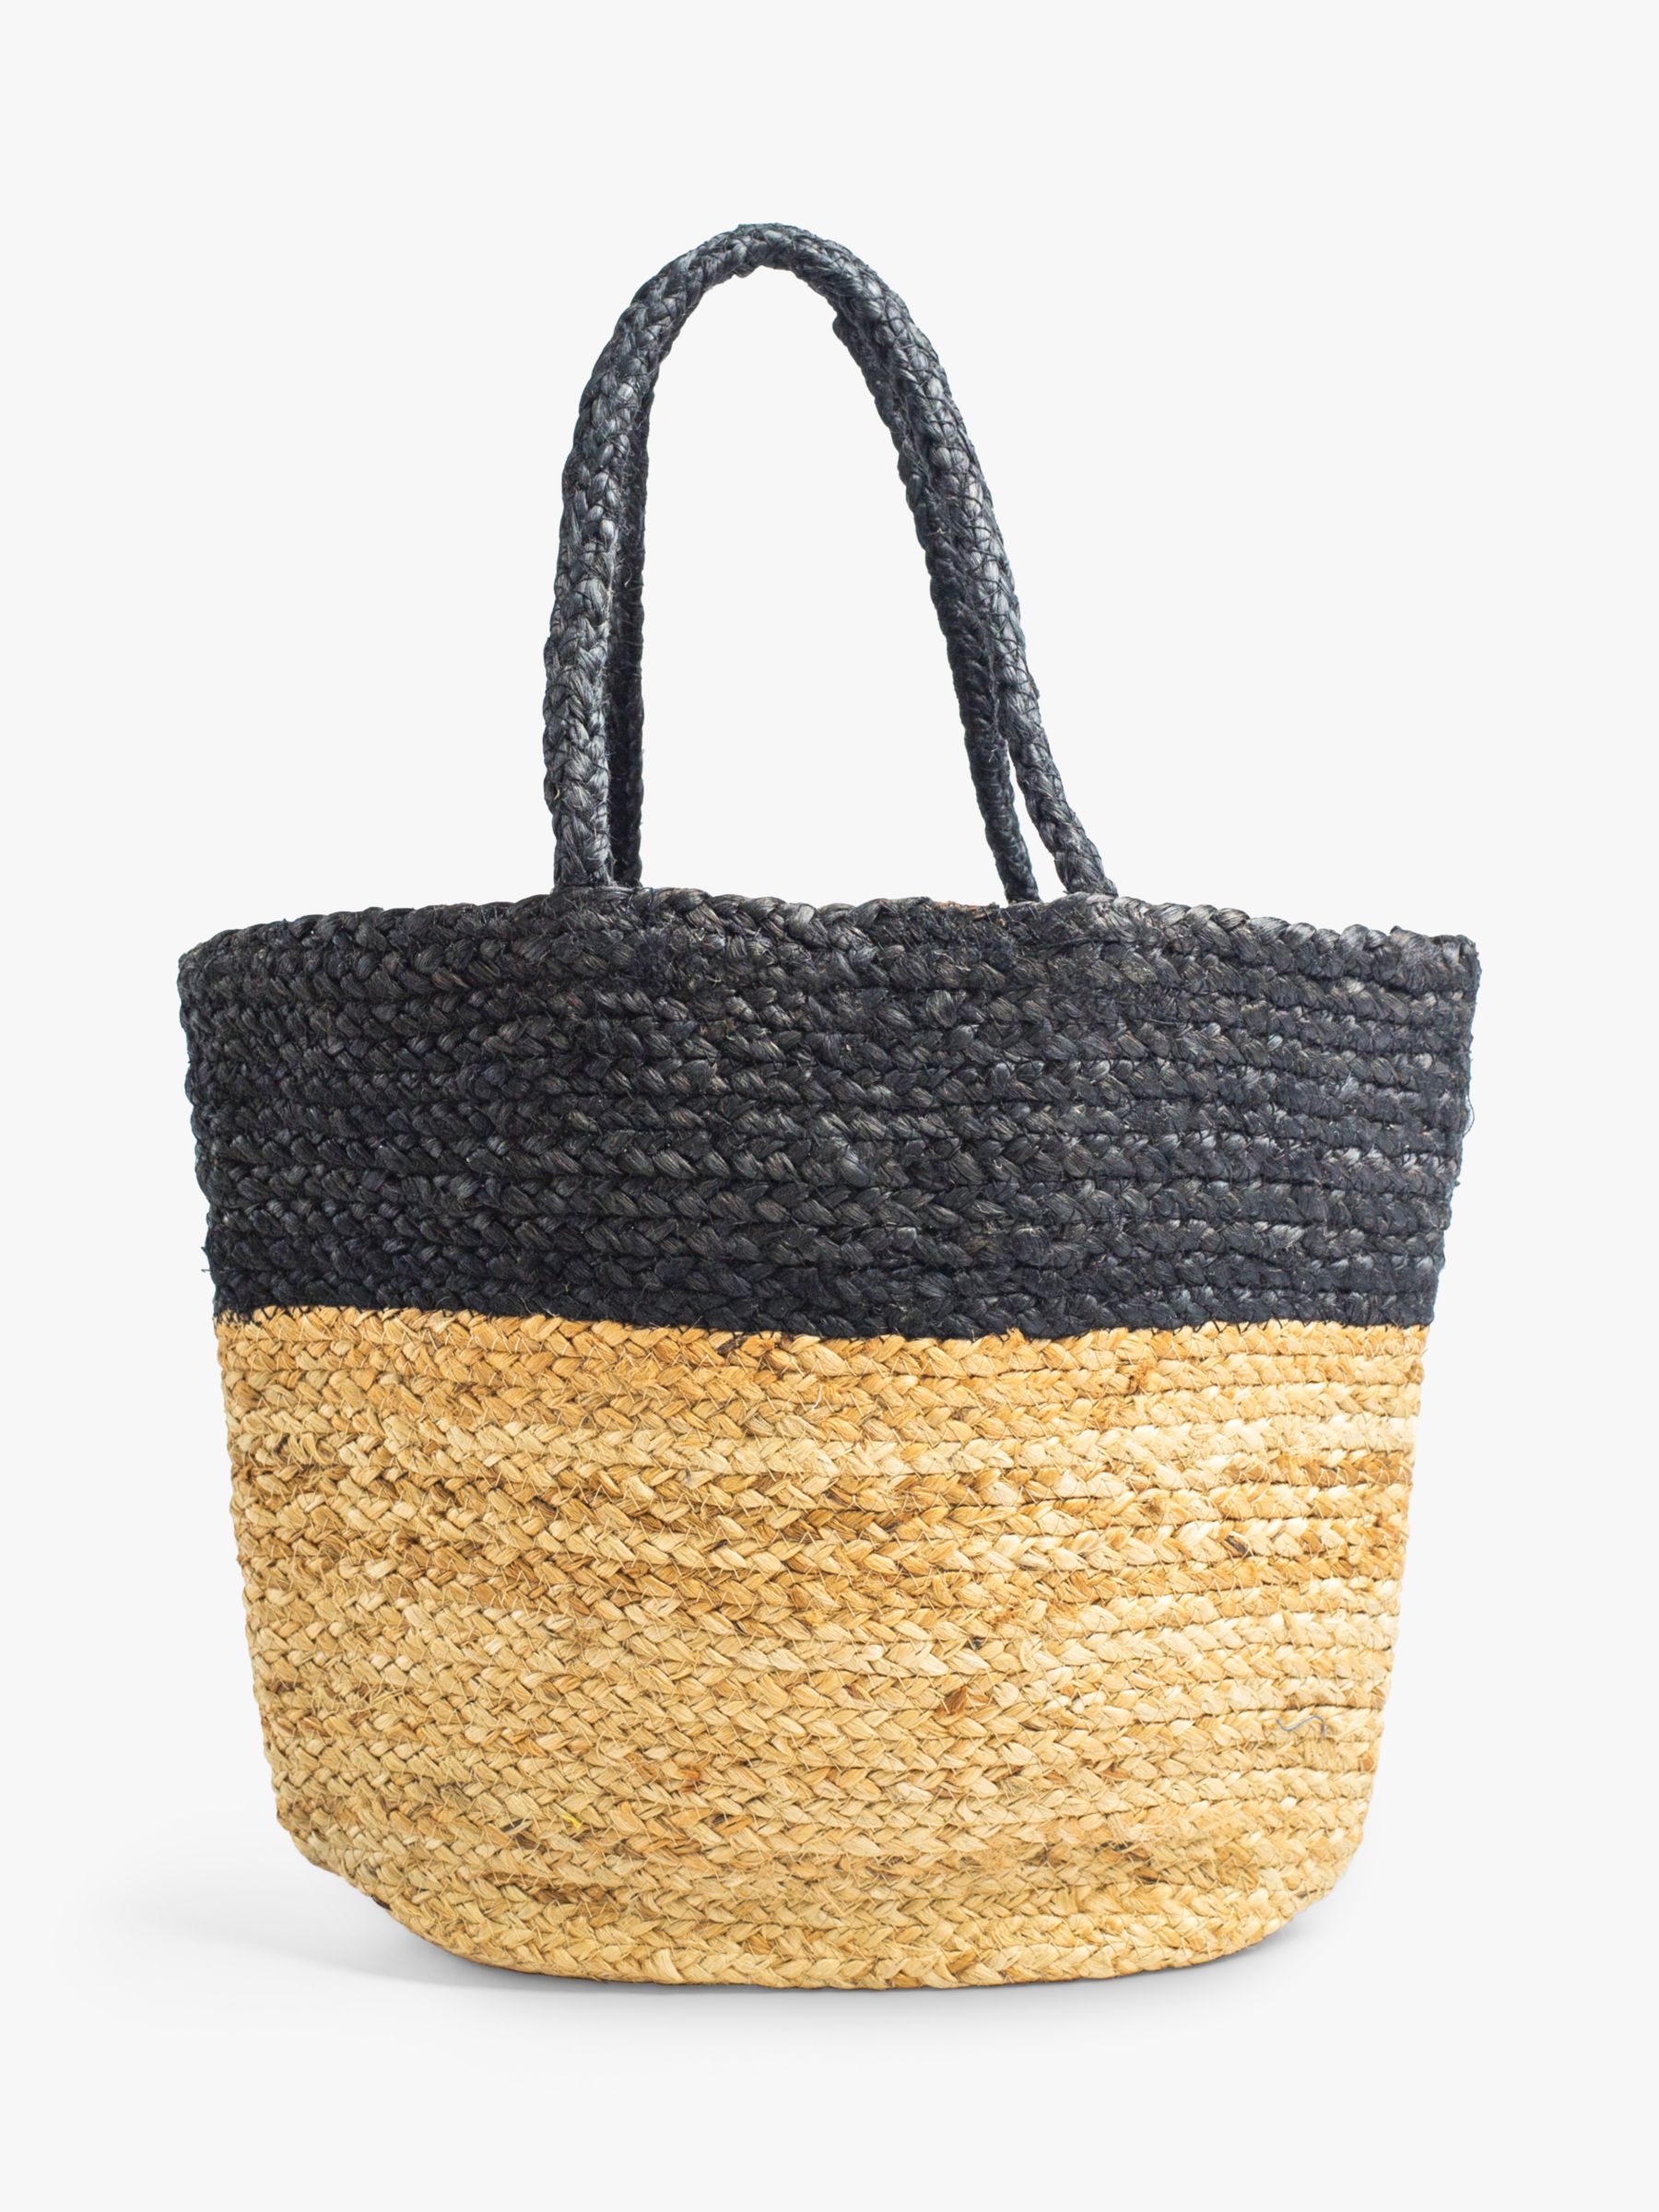 Bloom & Bay Veryan Colour Block Jute Tote Bag, Natural/Black, One Size